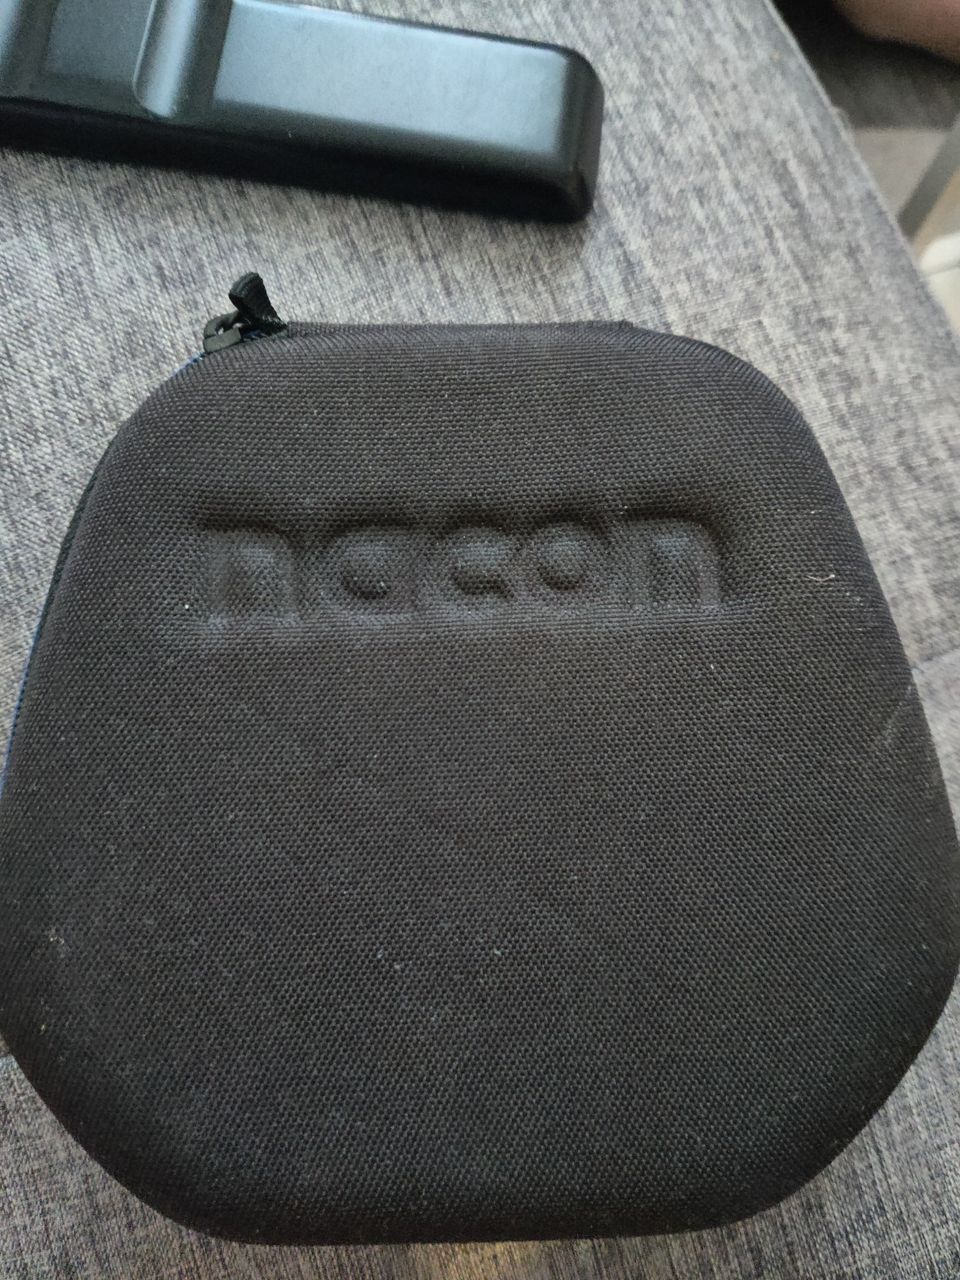 Nacon pro controller